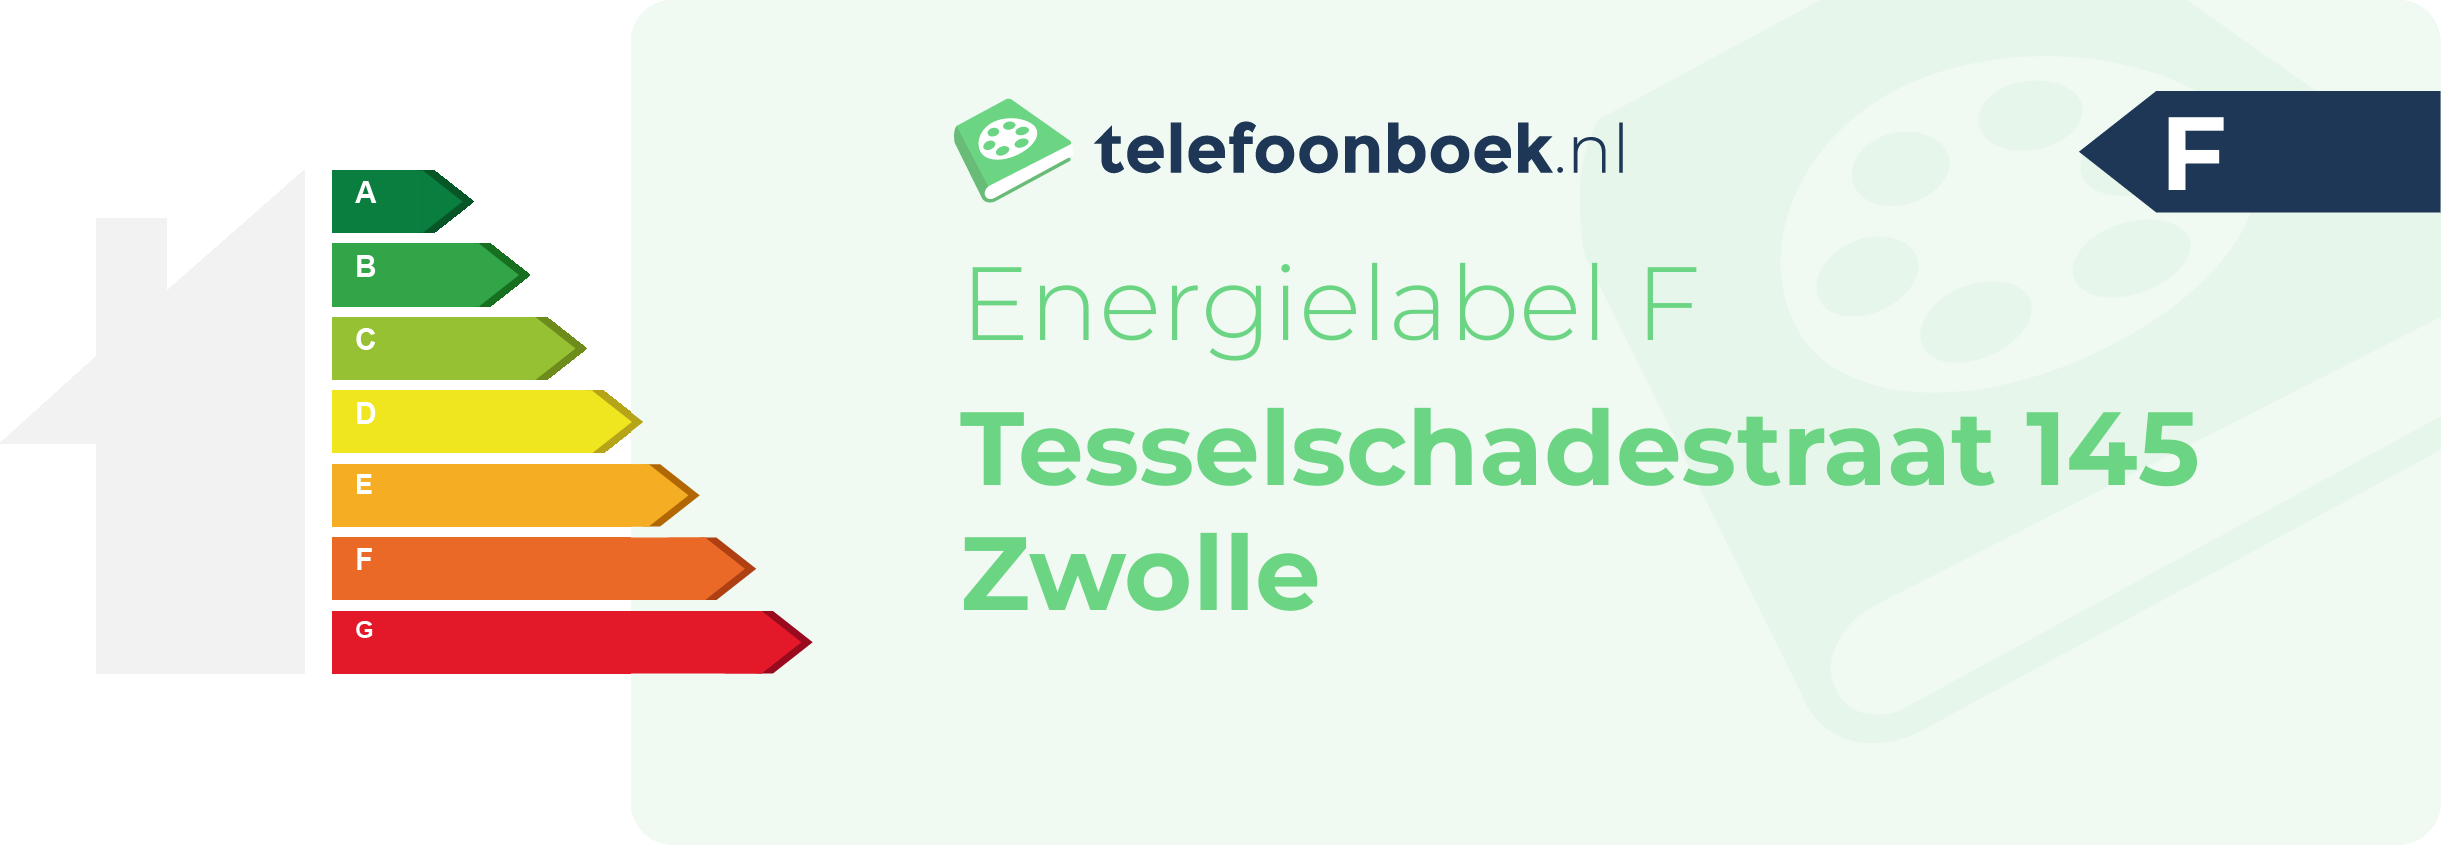 Energielabel Tesselschadestraat 145 Zwolle